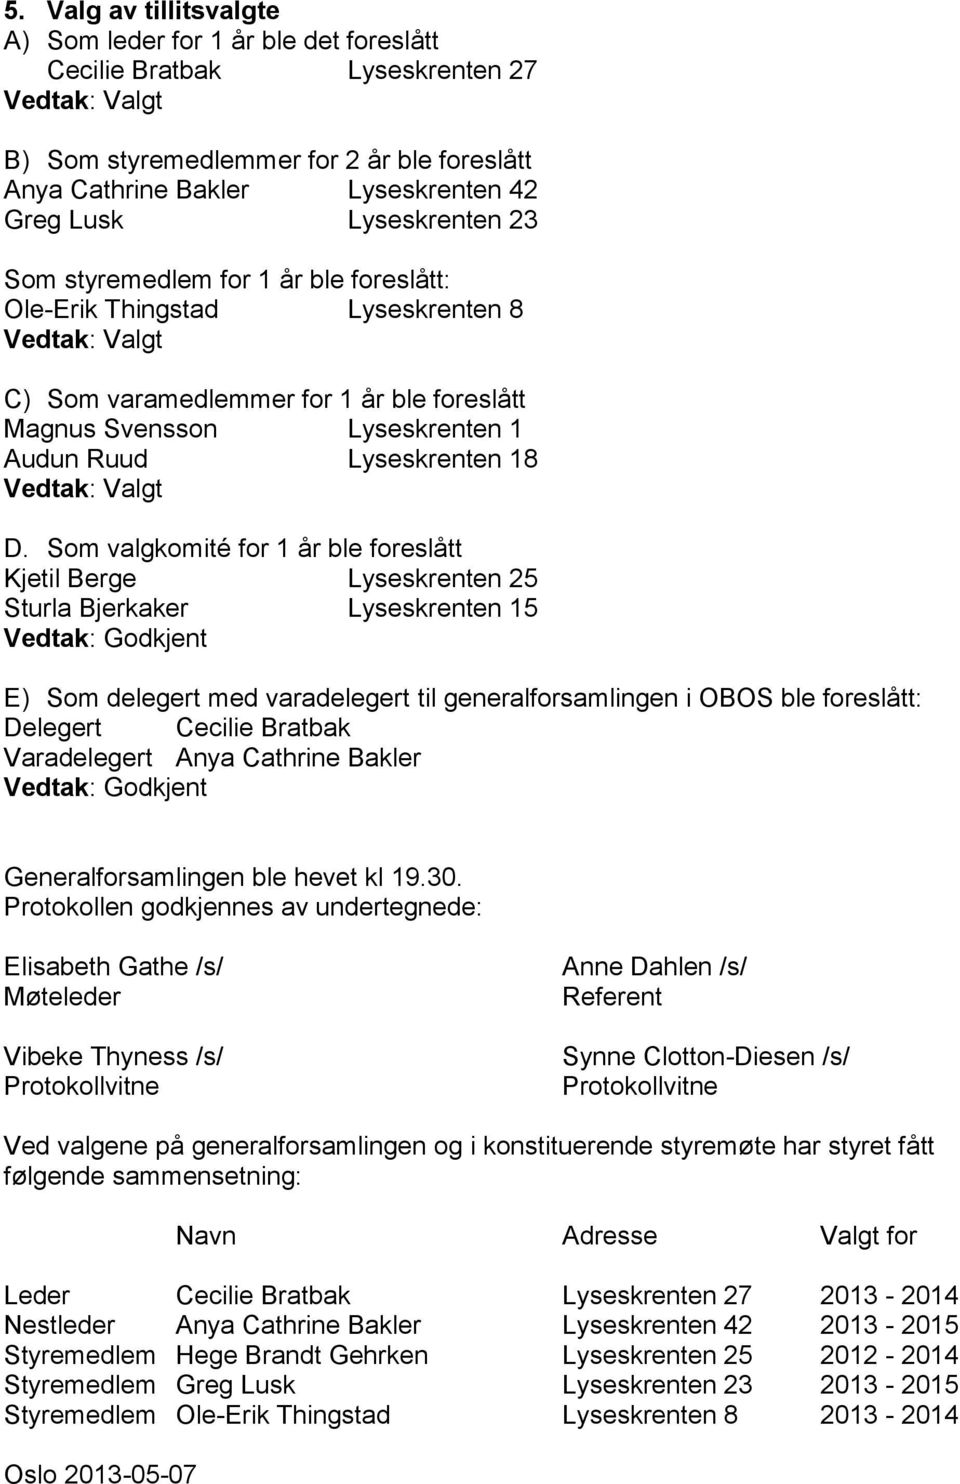 Som valgkomité for 1 år ble foreslått Kjetil Berge Lyseskrenten 25 Sturla Bjerkaker Lyseskrenten 15 E) Som delegert med varadelegert til generalforsamlingen i OBOS ble foreslått: Delegert Cecilie